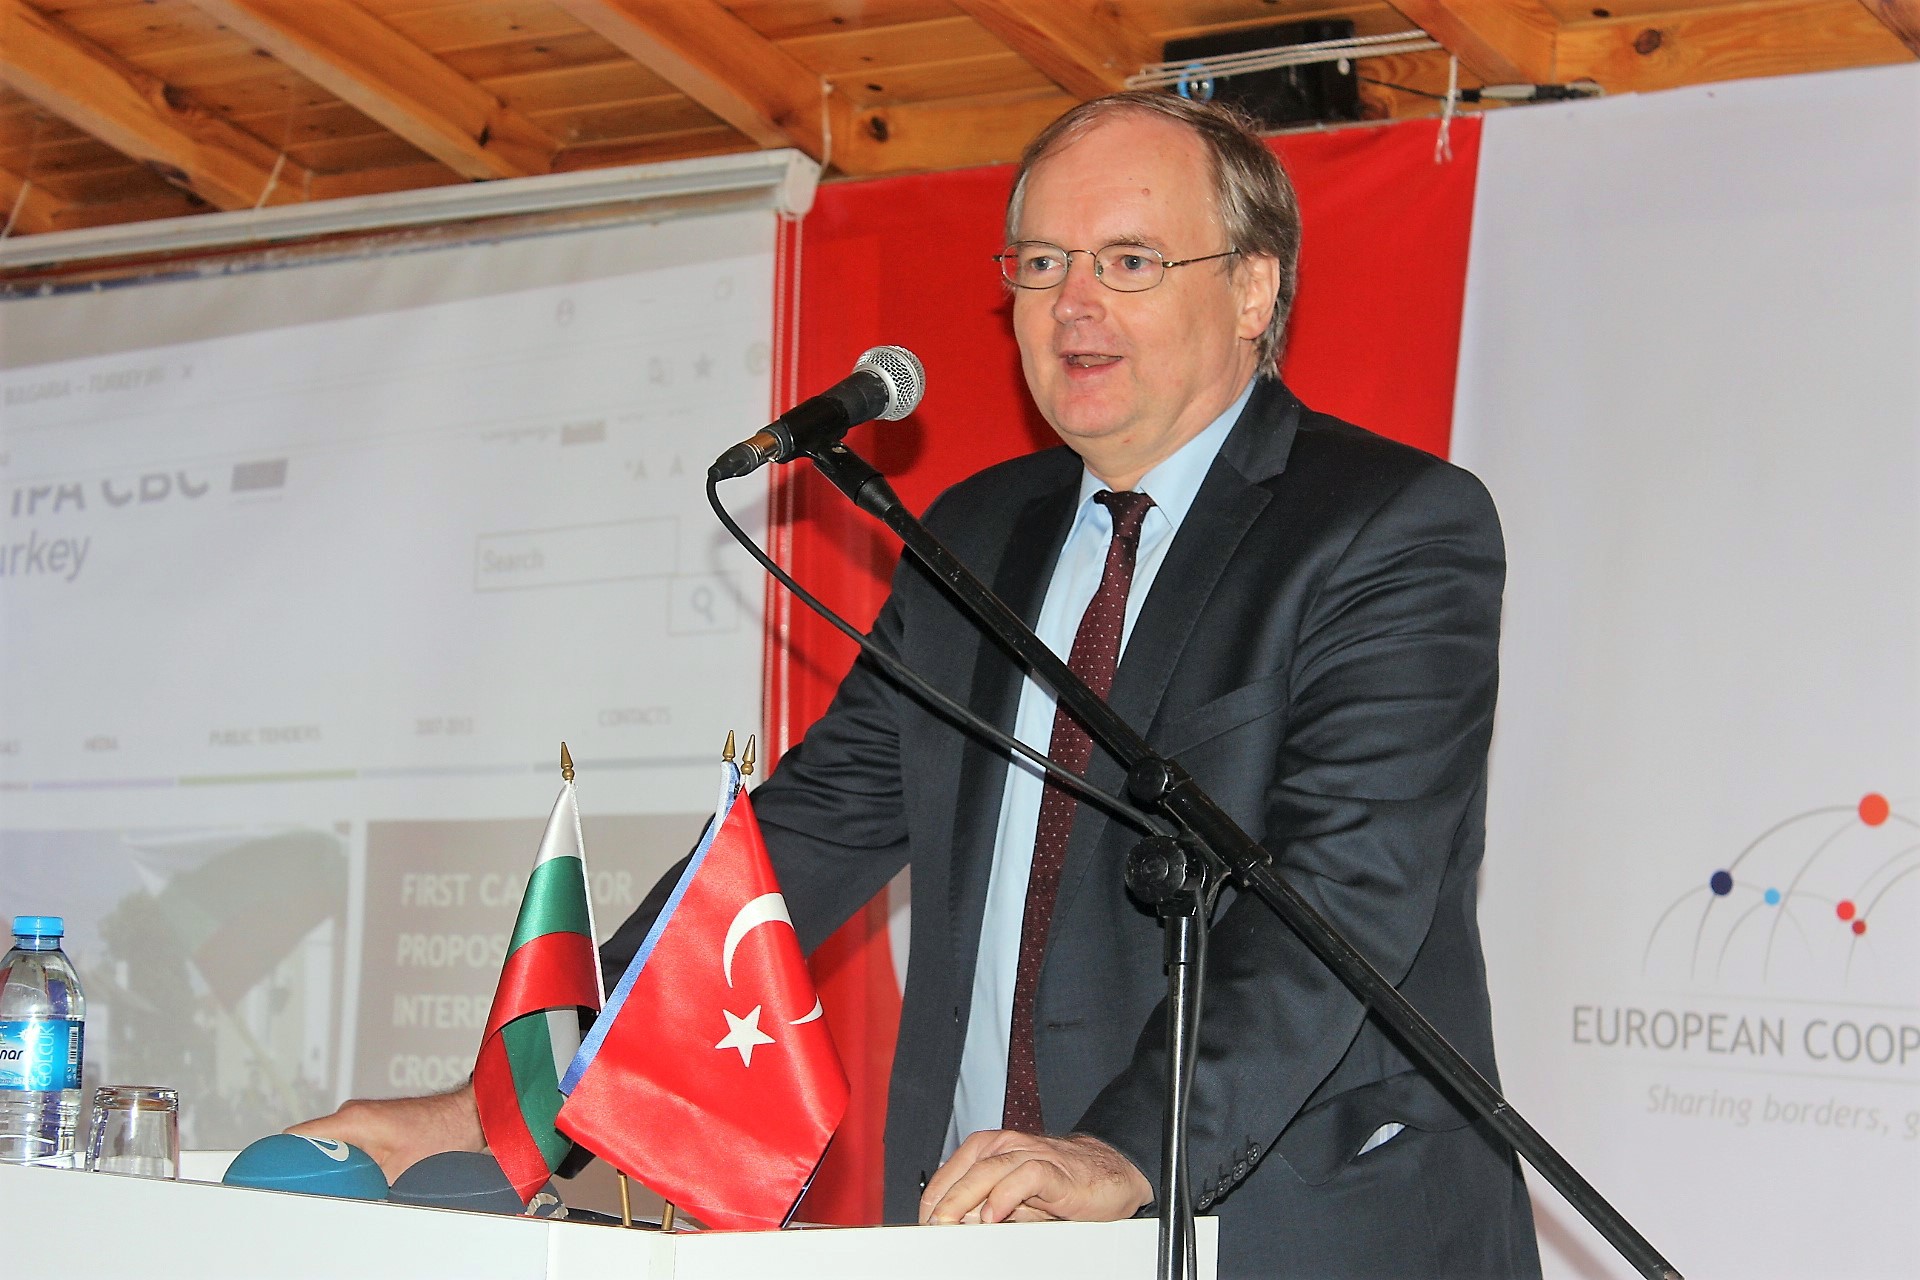 Avrupa İşbirliği Günü kutlamaları Kırklareli'de gerçekleşti-2379